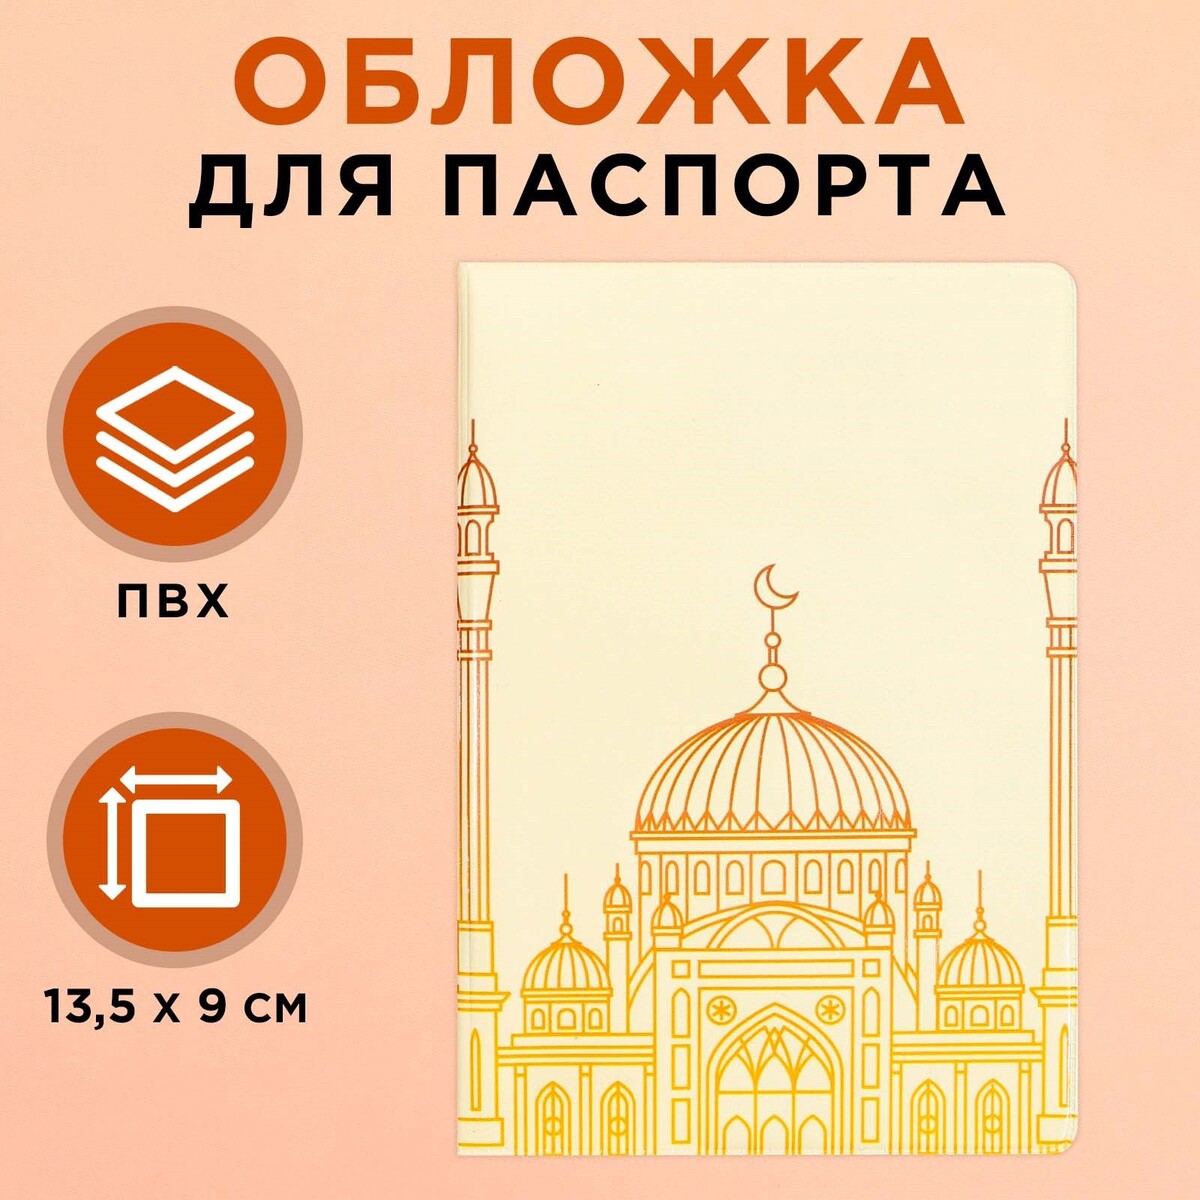 Обложка для паспорта на рамадан рамадан пост намаз дуа